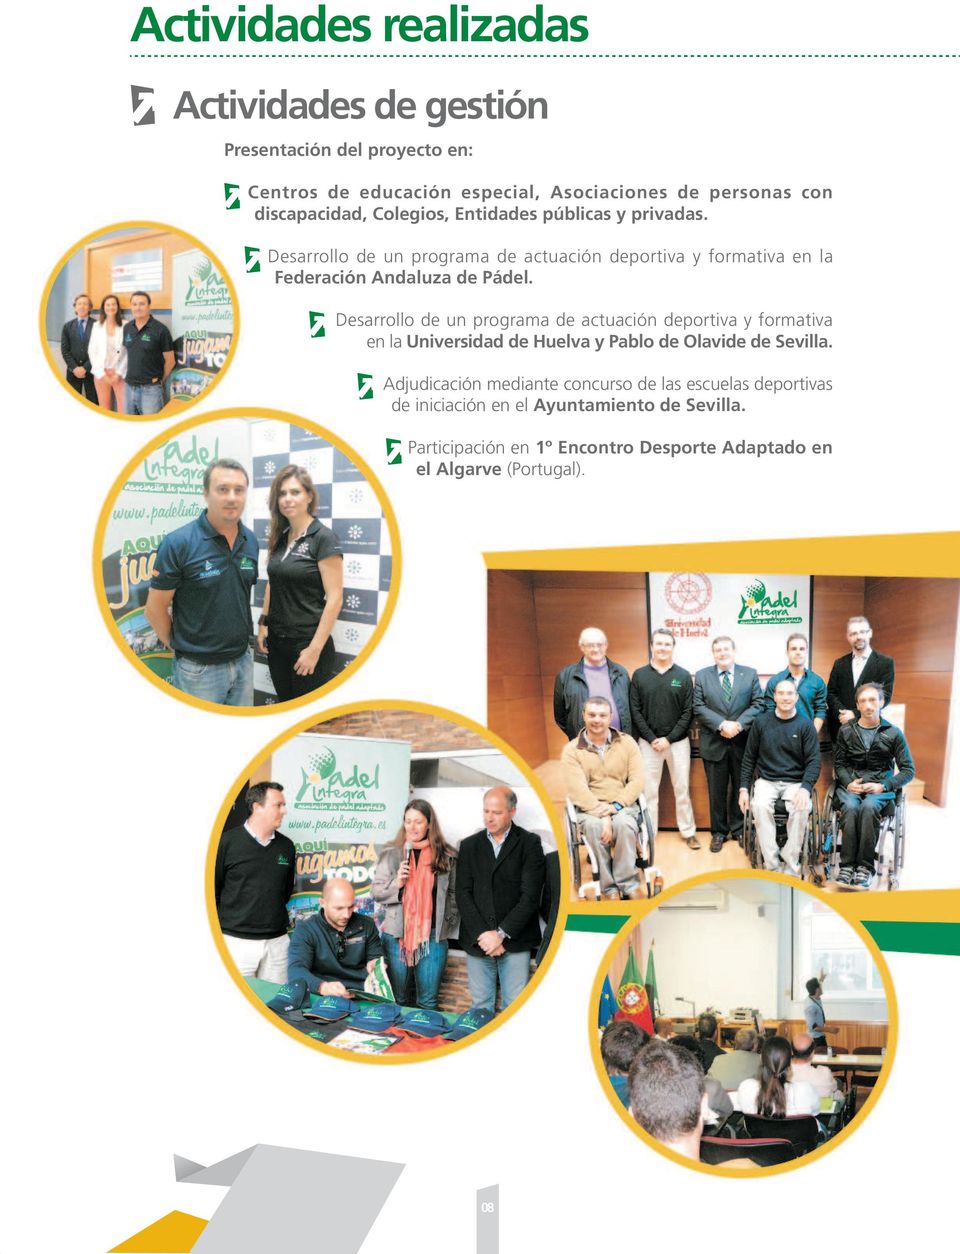 Desarrollo de un programa de actuación deportiva y formativa en la Federación Andaluza de Pádel.